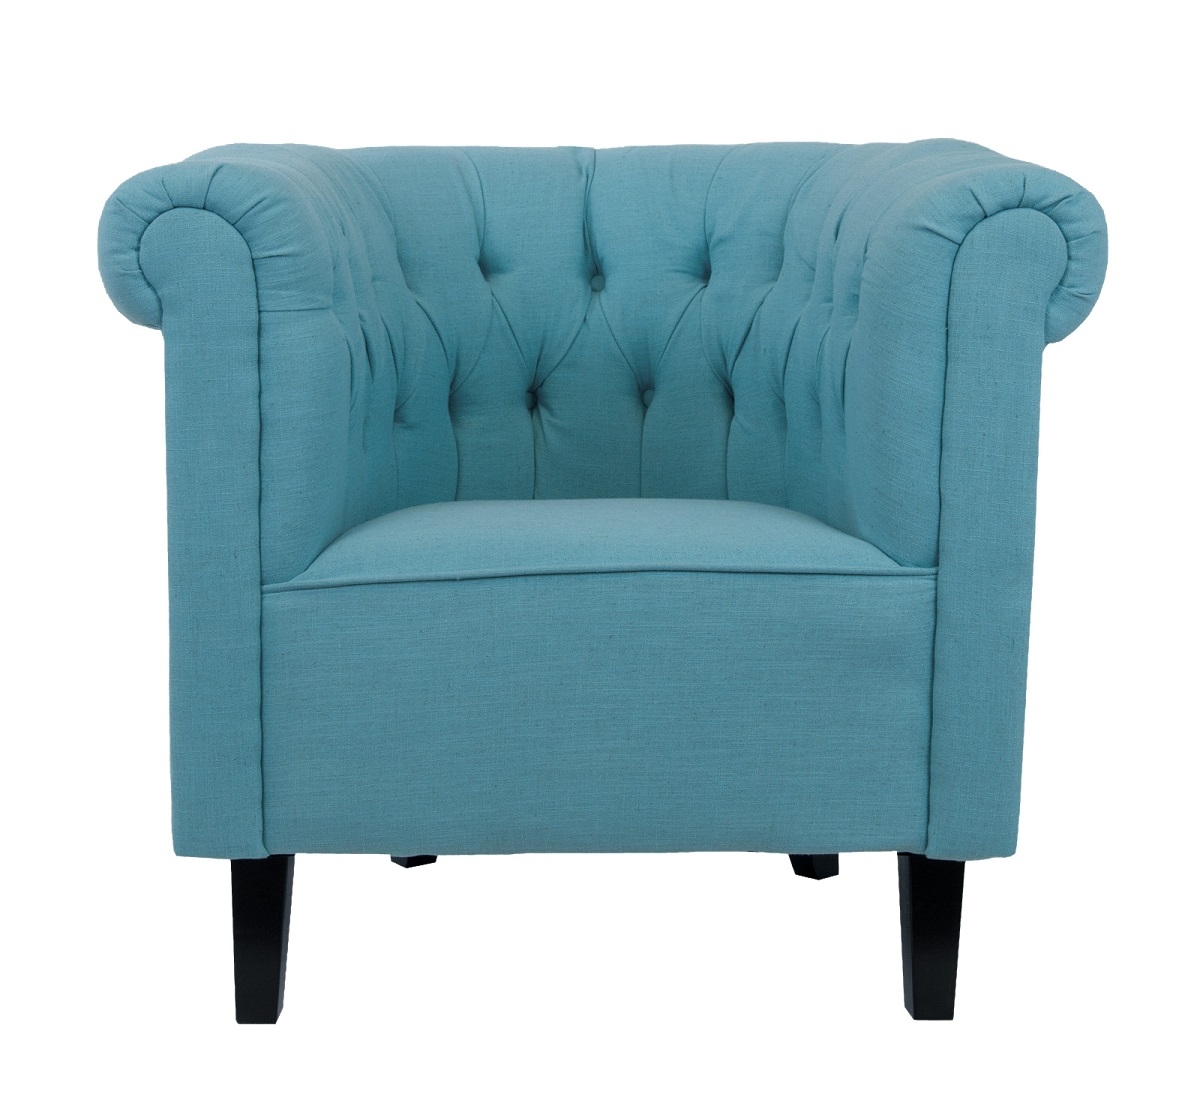 Низкие кресла для дома Swaun turquoise